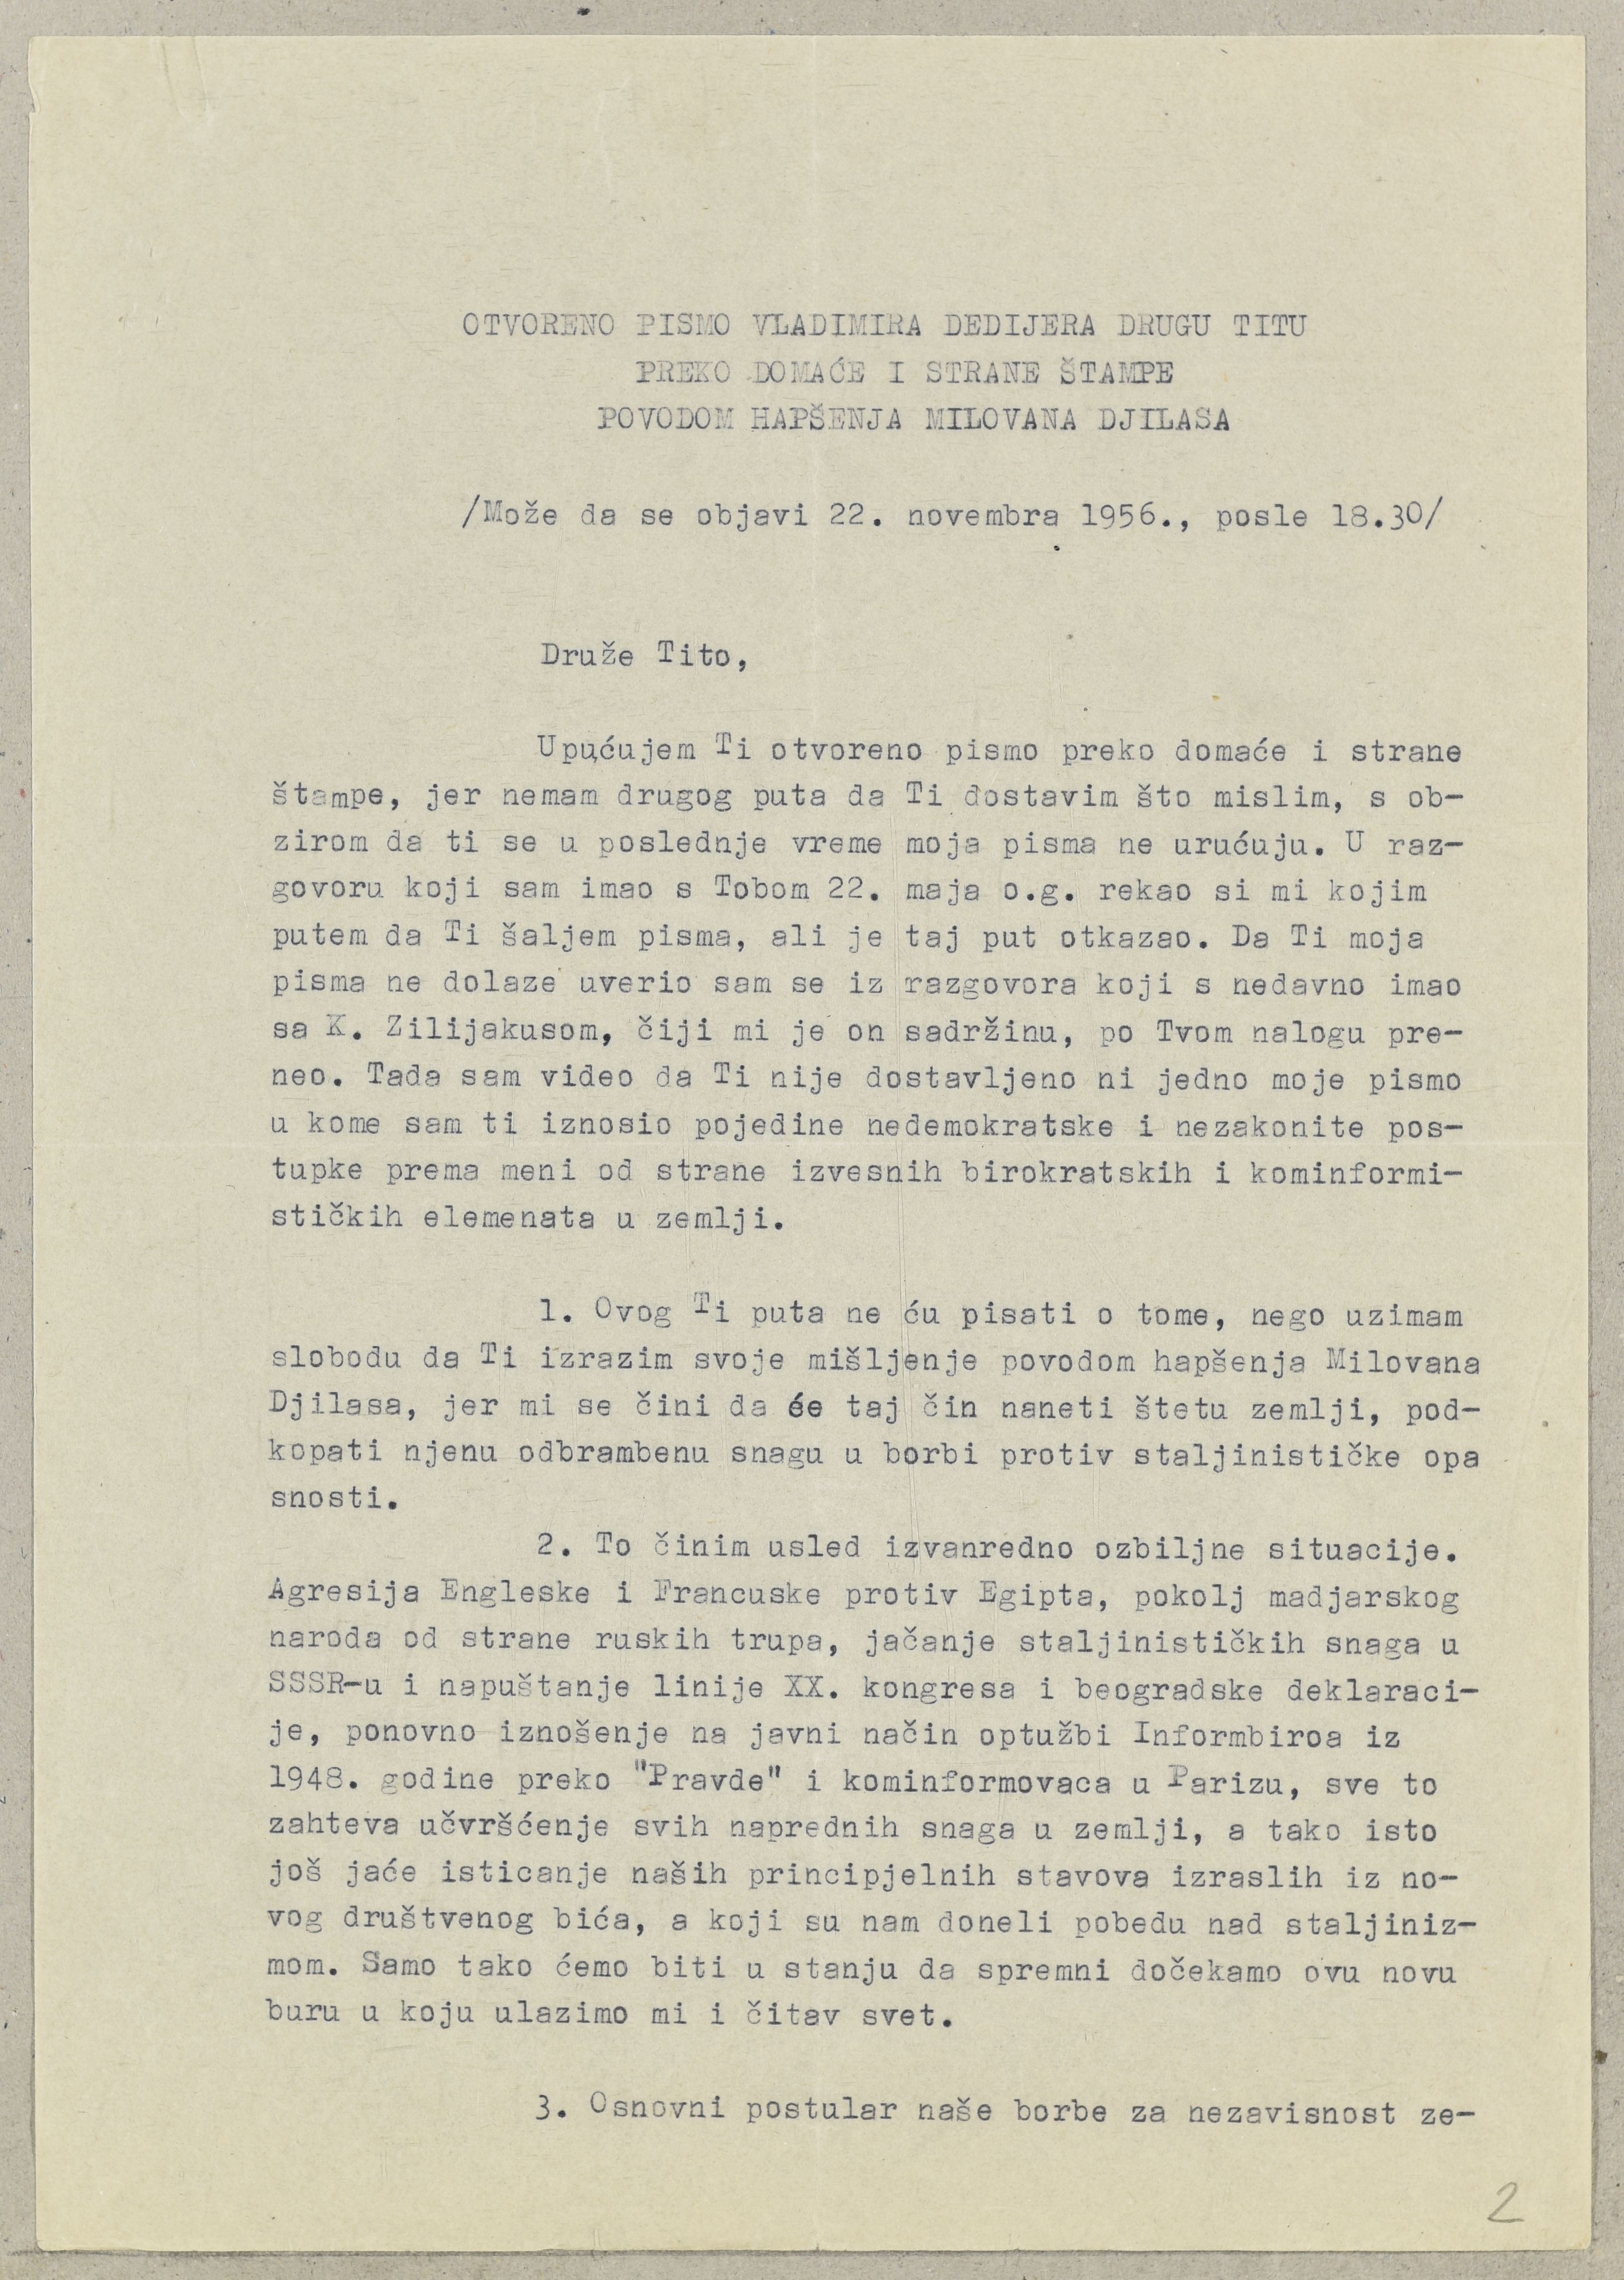 Otvoreno pismo Vladimira Dedijera Josipu Brozu Titu povodom uhićenja Milovana Đilasa. 1956. Arhivski dokument.